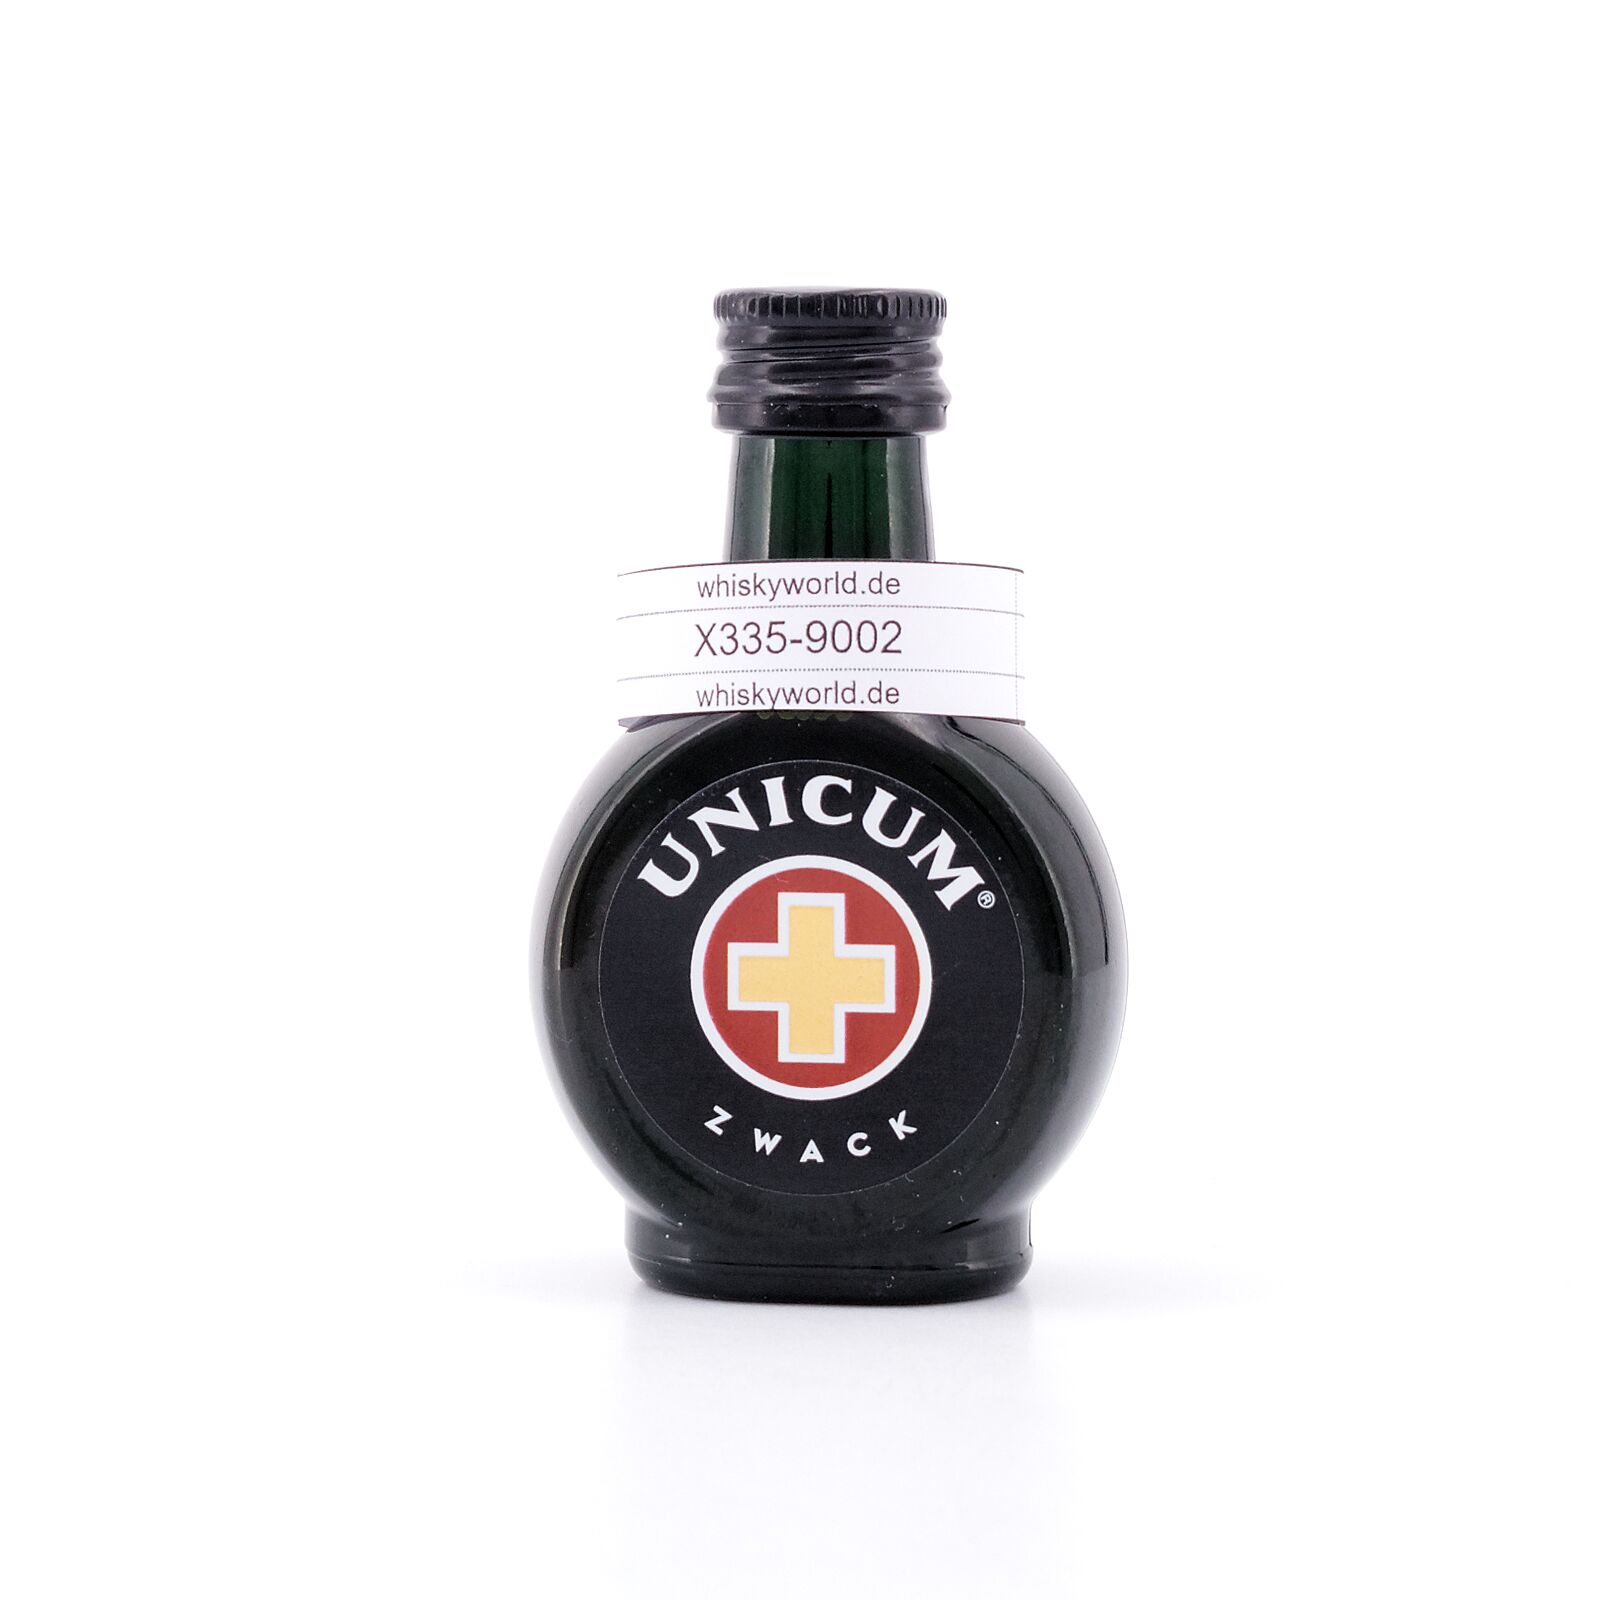 Zwack Unicum 40.0% Kräuterlikör vol 0,040 Liter/ Miniatur